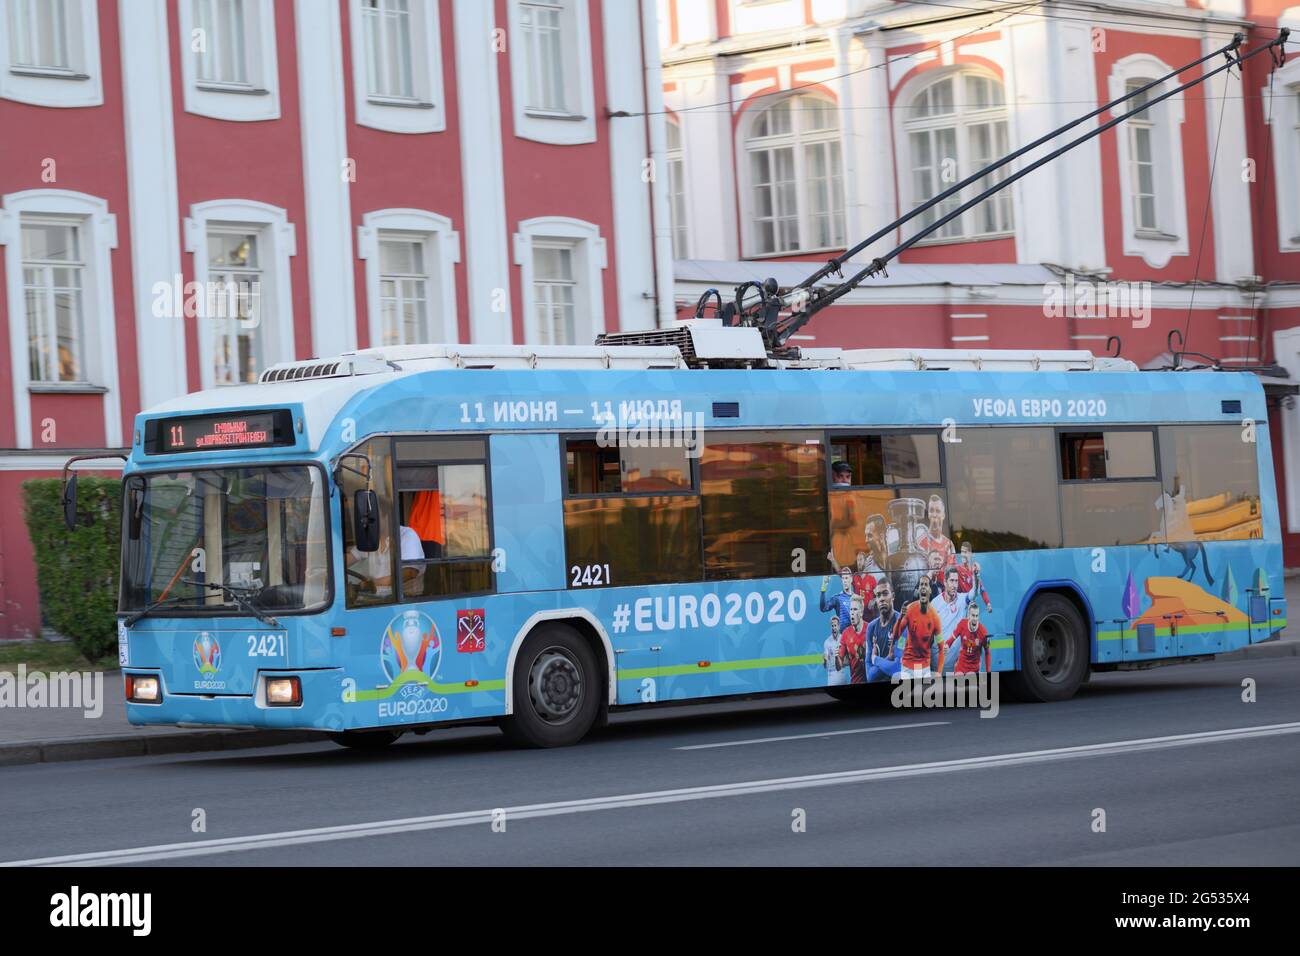 Filobus con logo, hashtag e pubblicità del campionato di calcio UEFA EURO 2020 a San Pietroburgo, Russia, che ha ospitato 7 partite della coppa Foto Stock